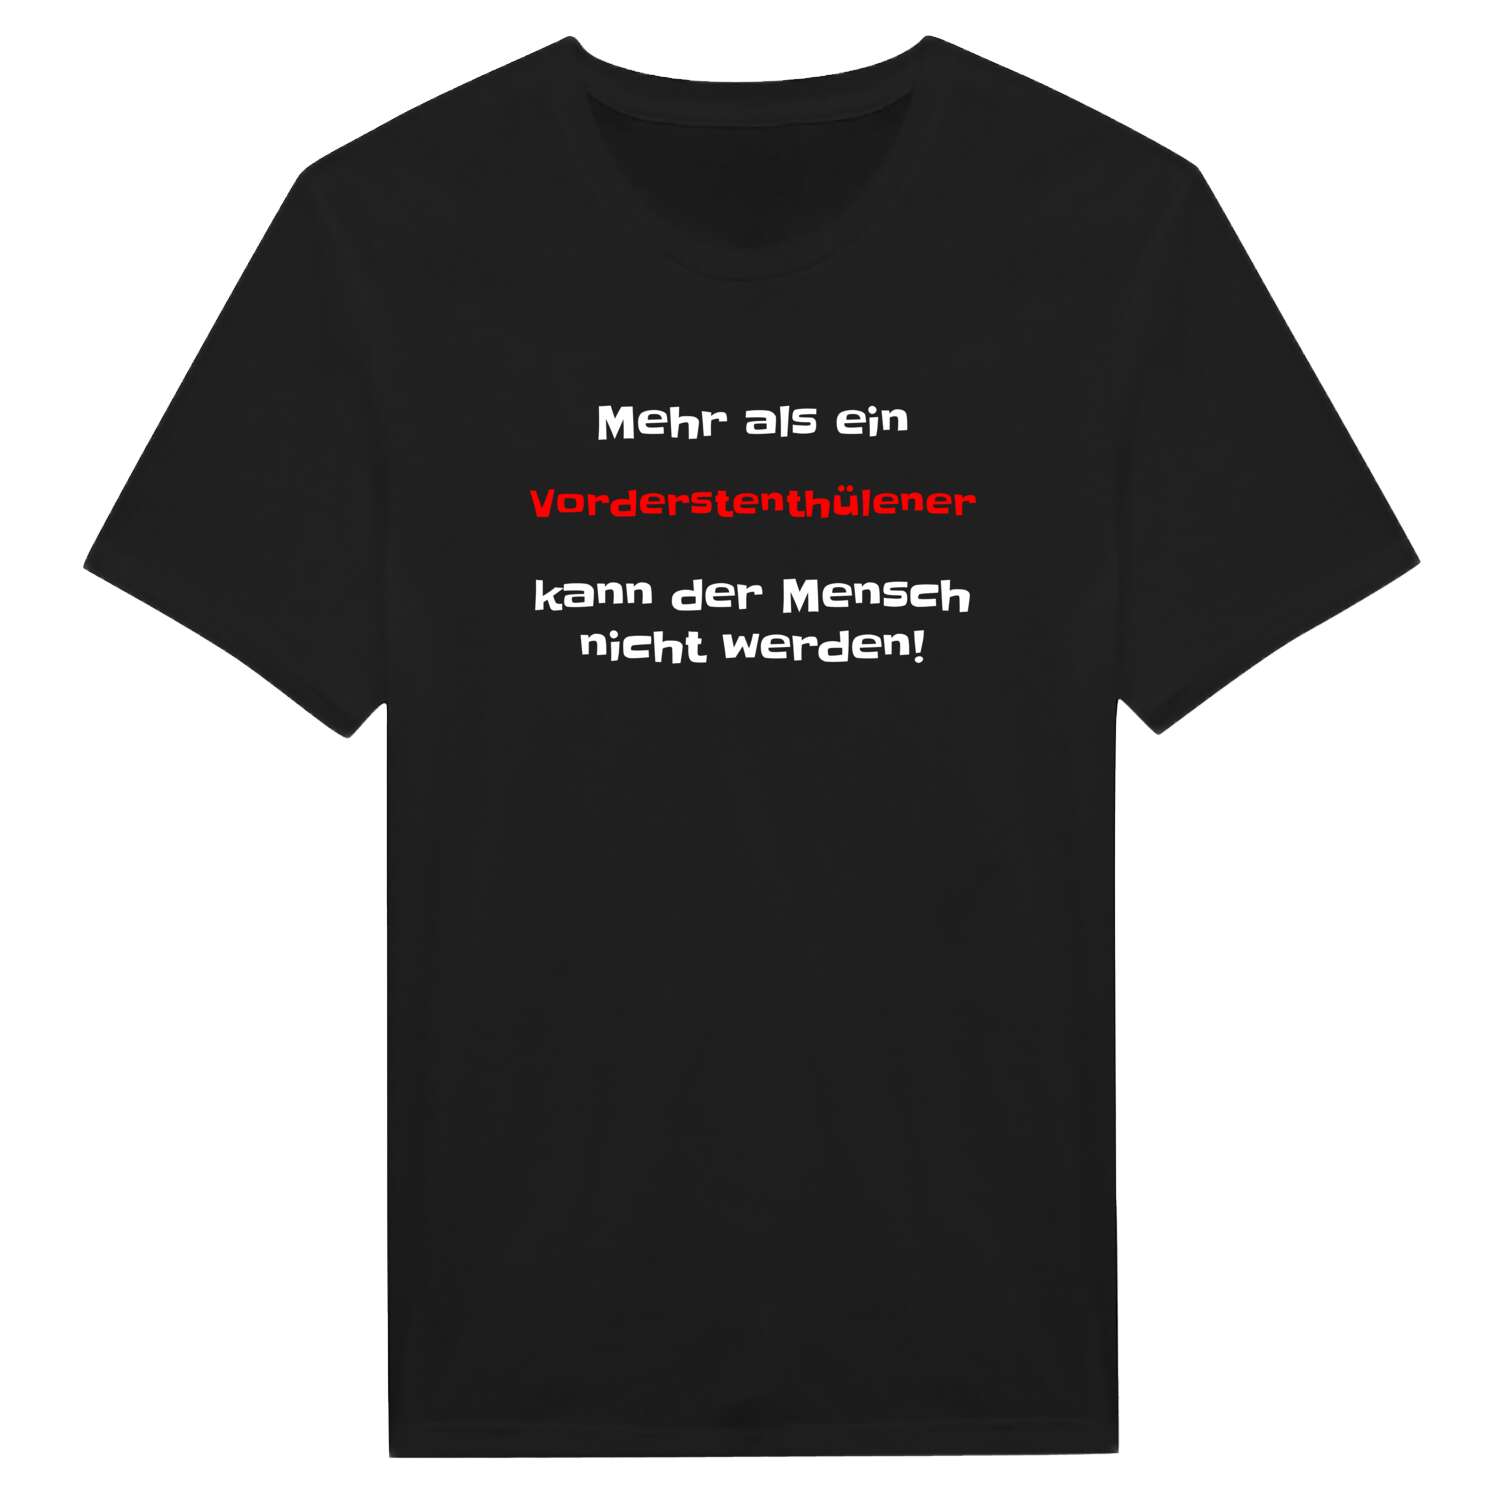 Vorderstenthüle T-Shirt »Mehr als ein«